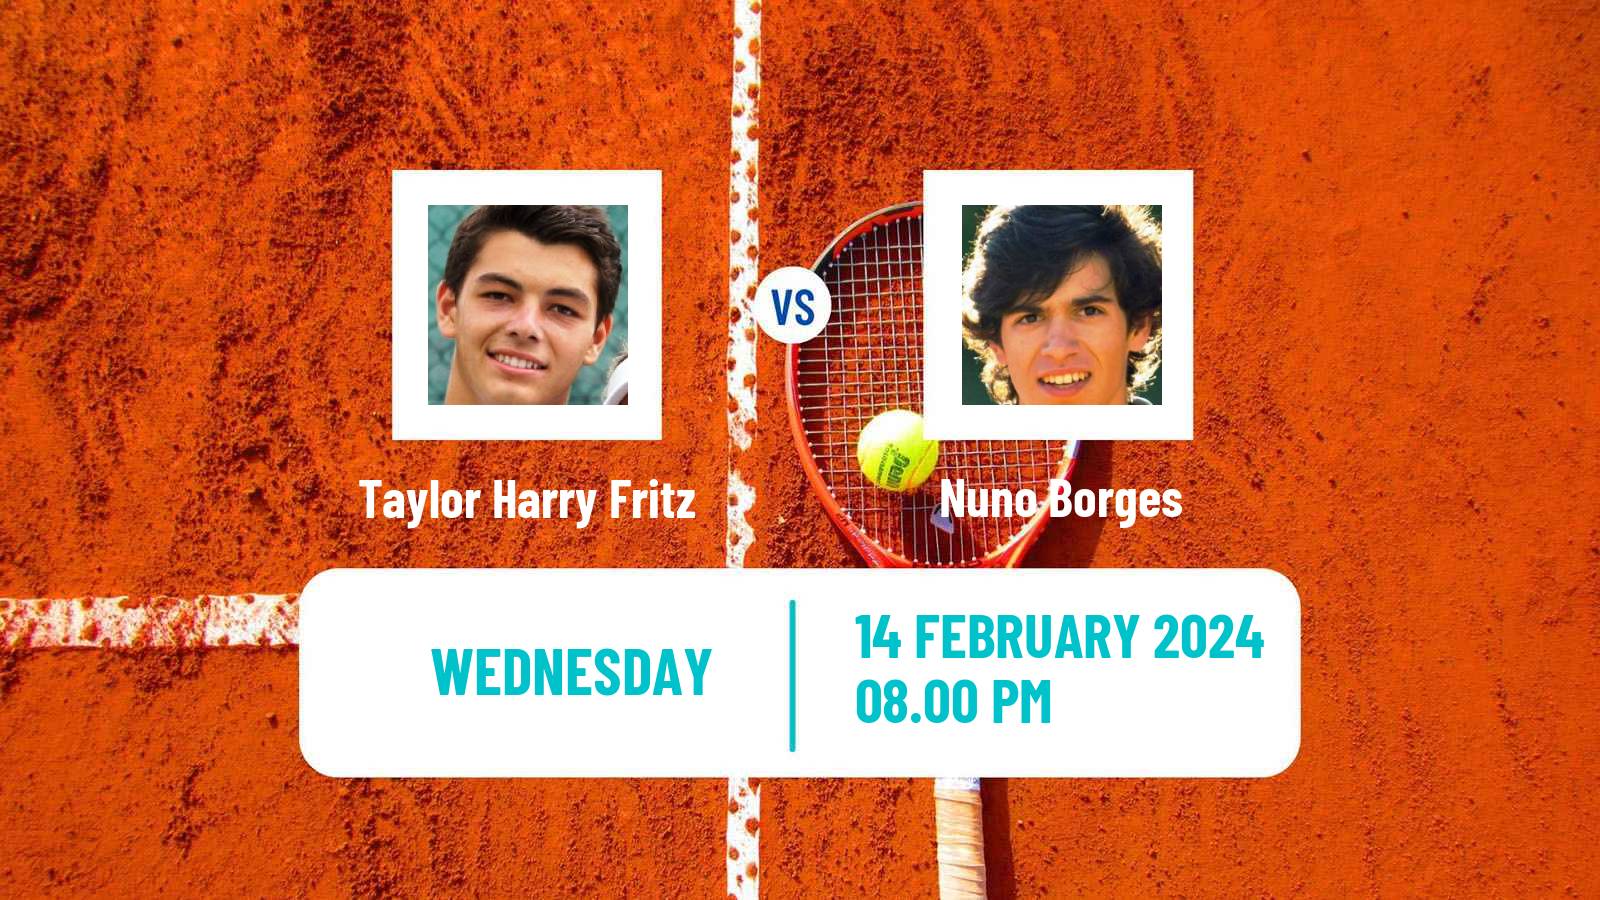 Tennis ATP Delray Beach Taylor Harry Fritz - Nuno Borges